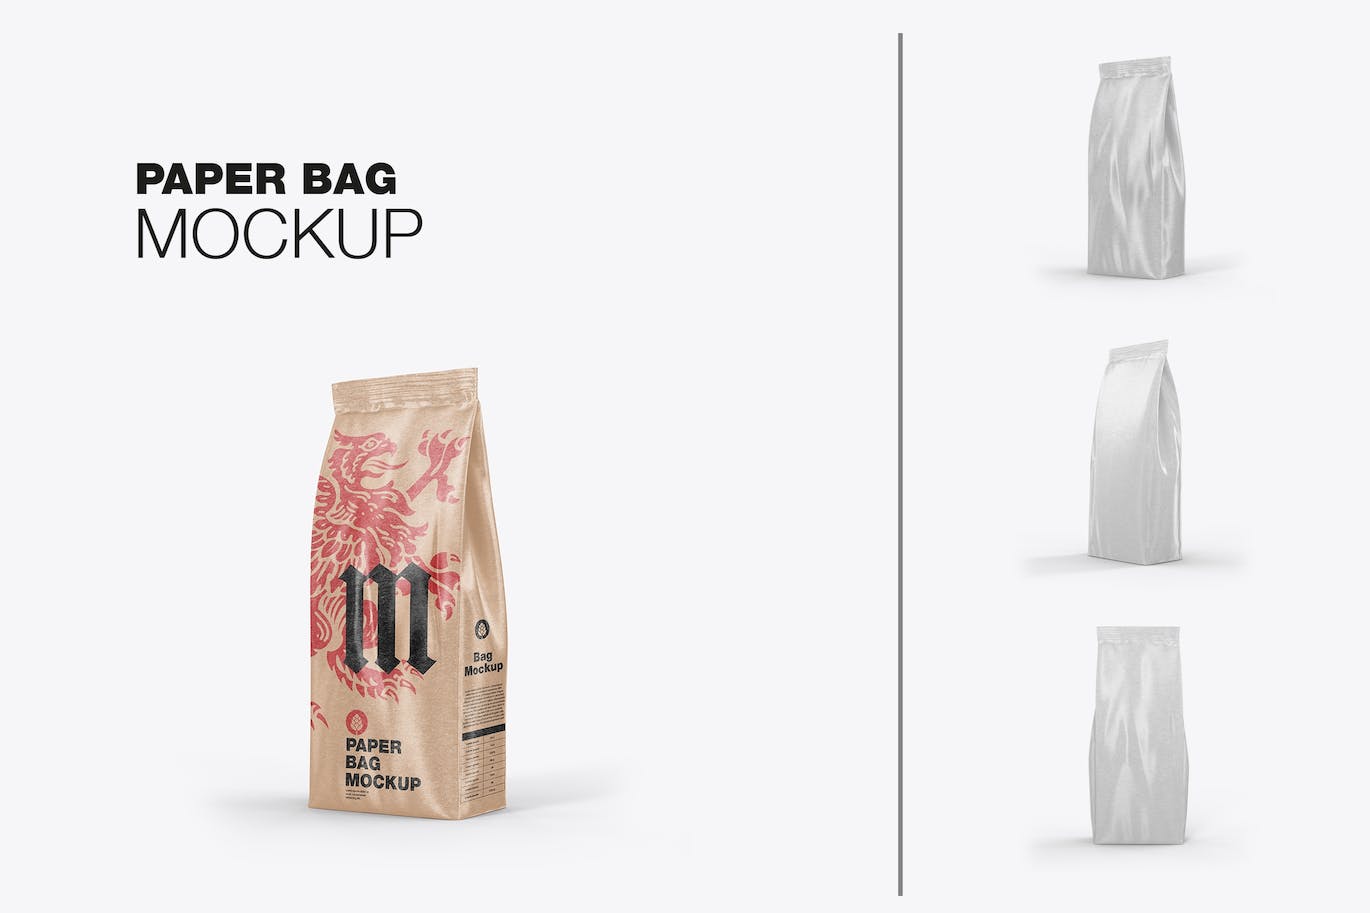 牛皮纸食品袋包装设计样机图 Pack Kraft Food Bag Mockup 样机素材 第1张